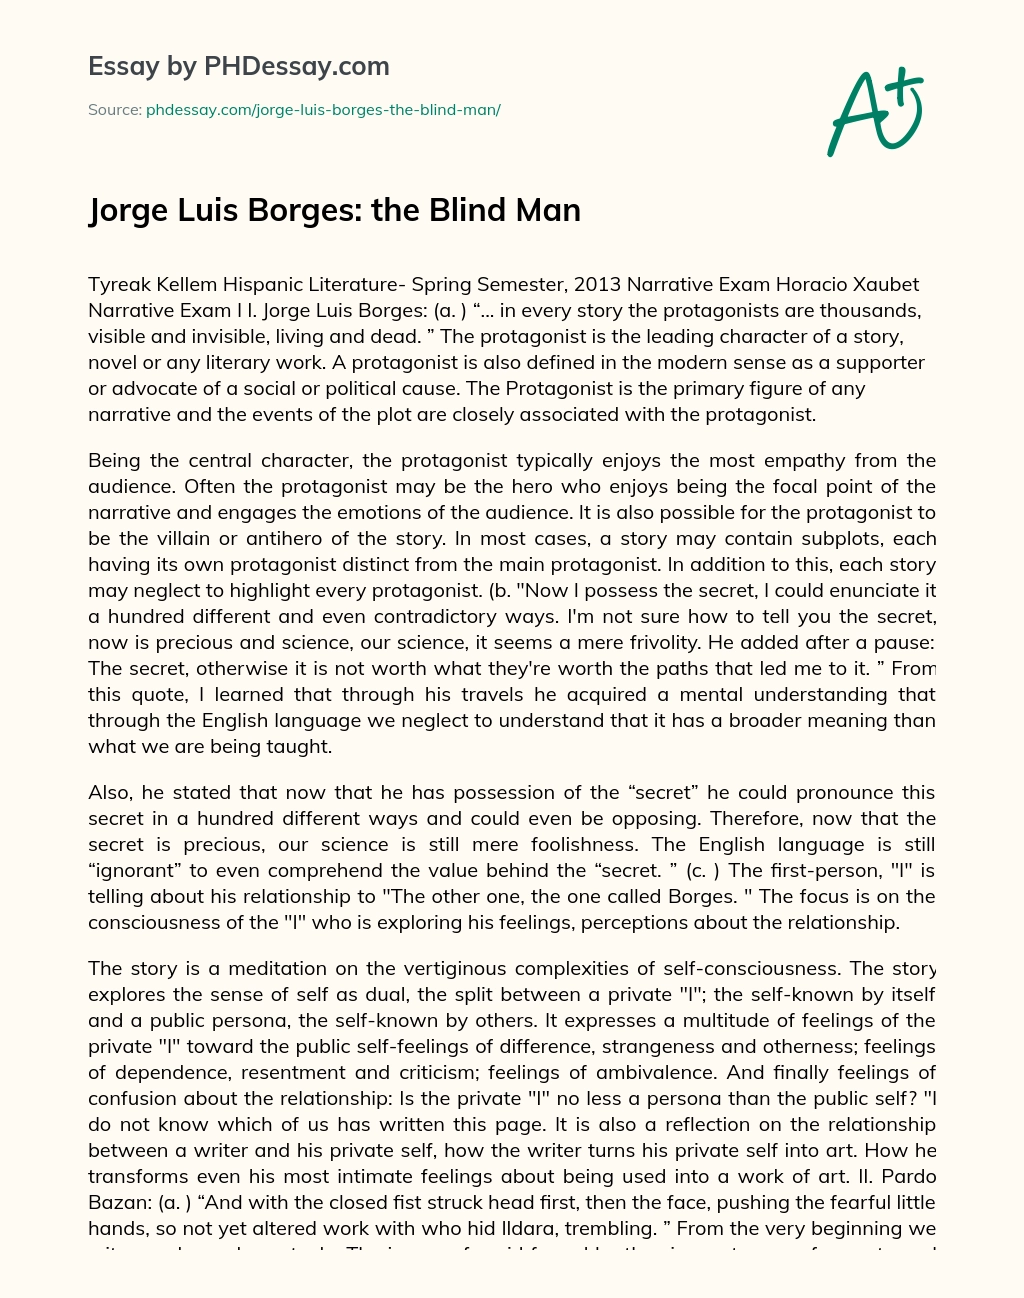 Jorge Luis Borges: the Blind Man essay